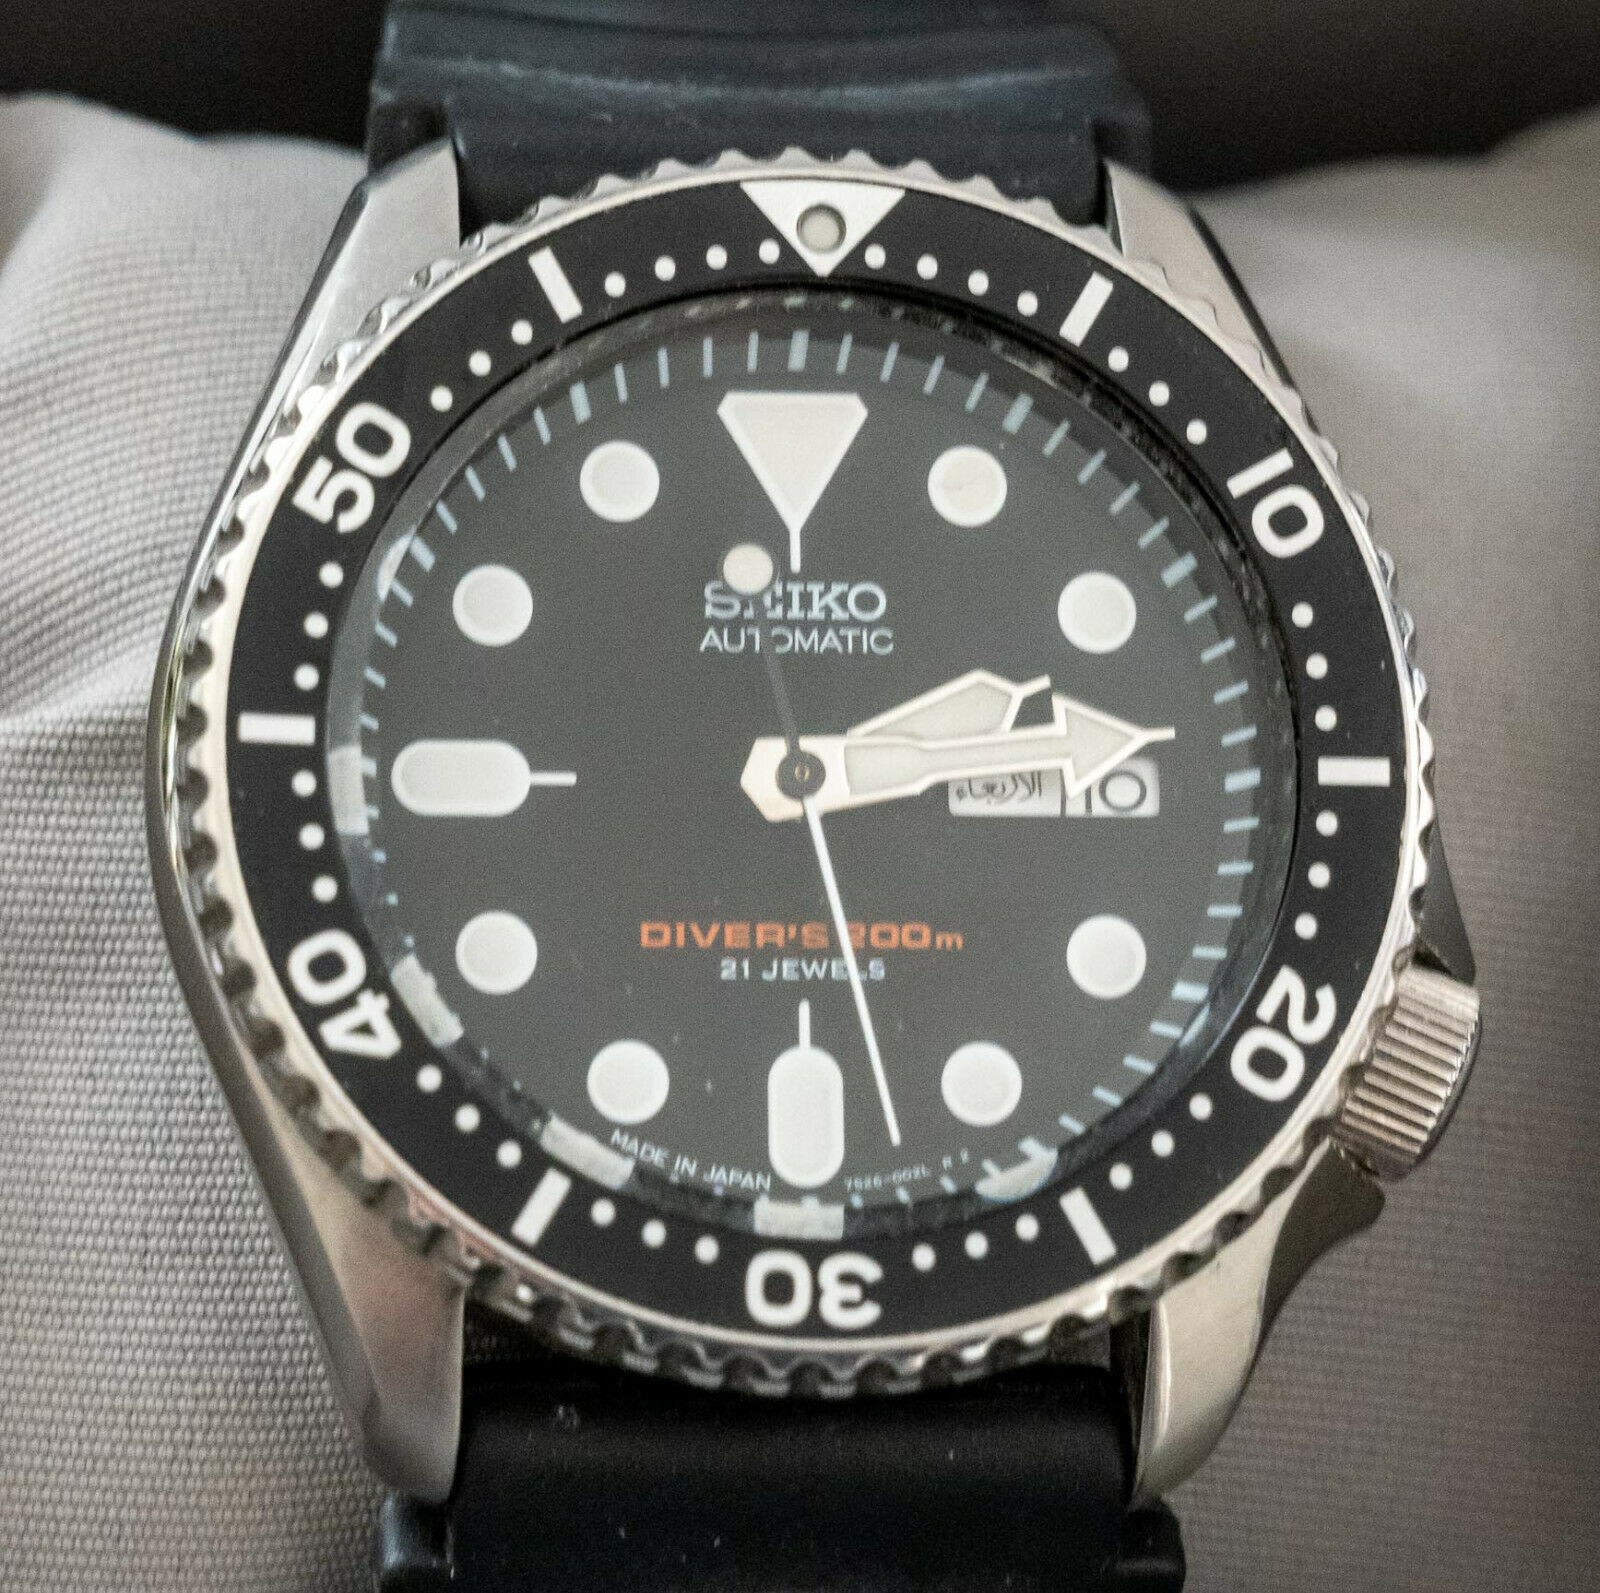 Seiko 7S26 002L Men's Automatic Diver's Watch - excellent condition - a ...